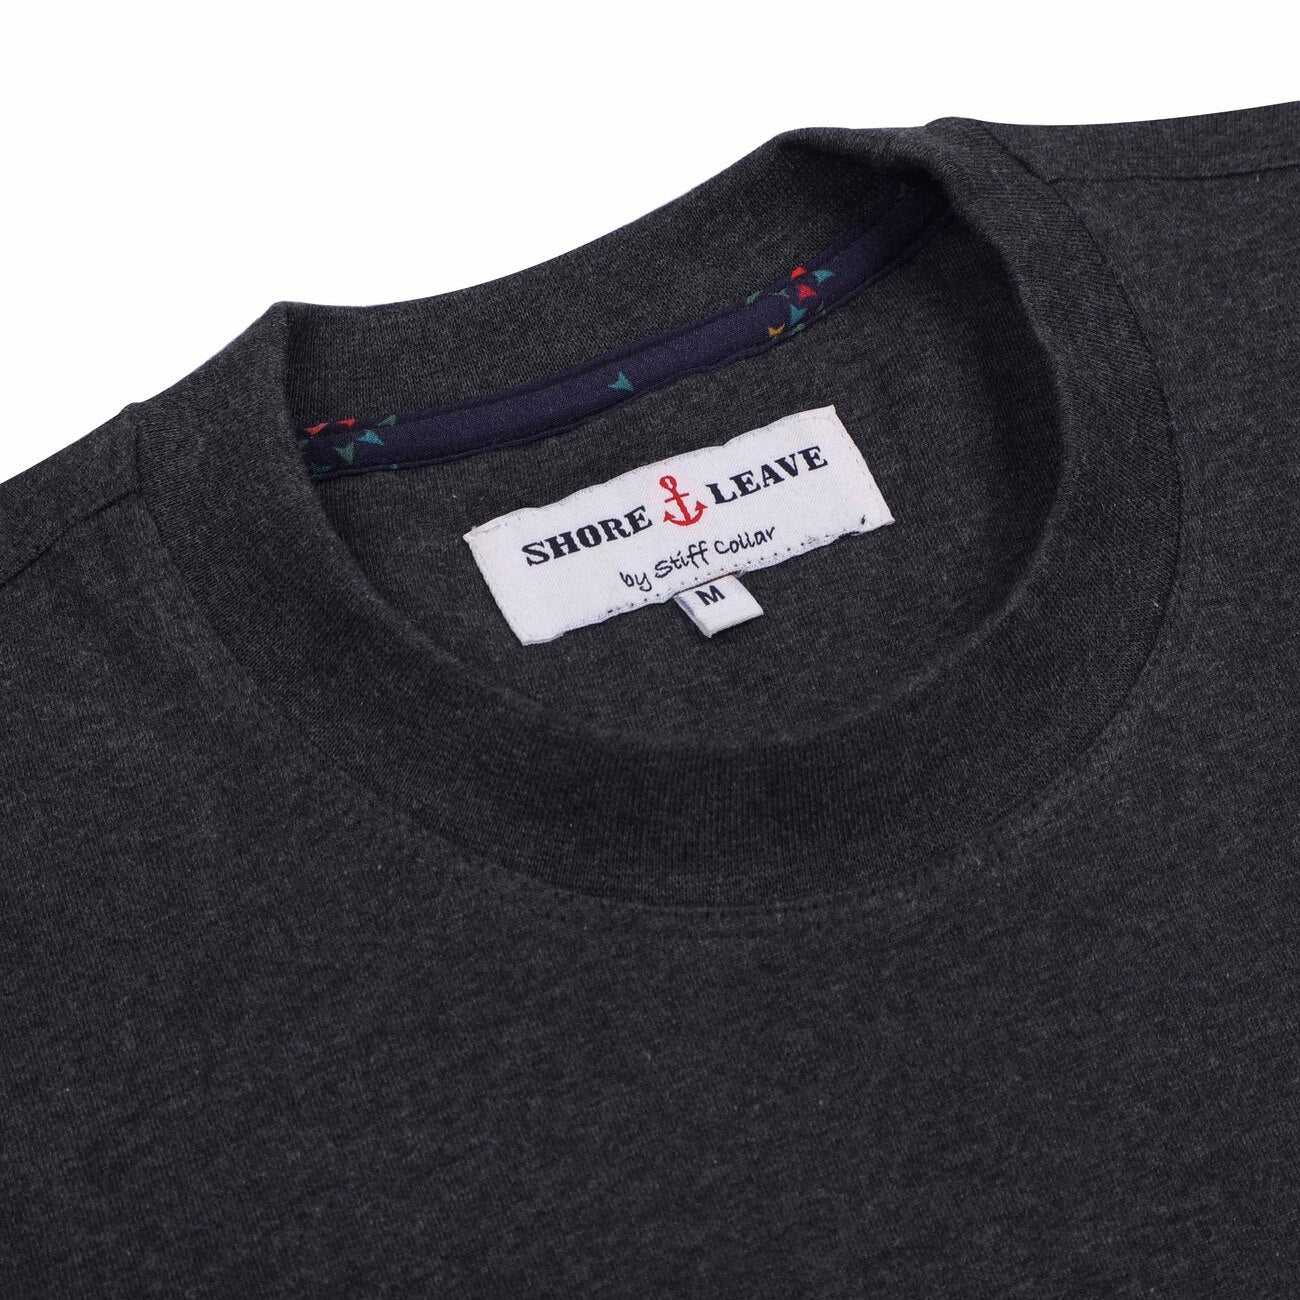 Melange Grey Round Neck Premium Cotton T-Shirt